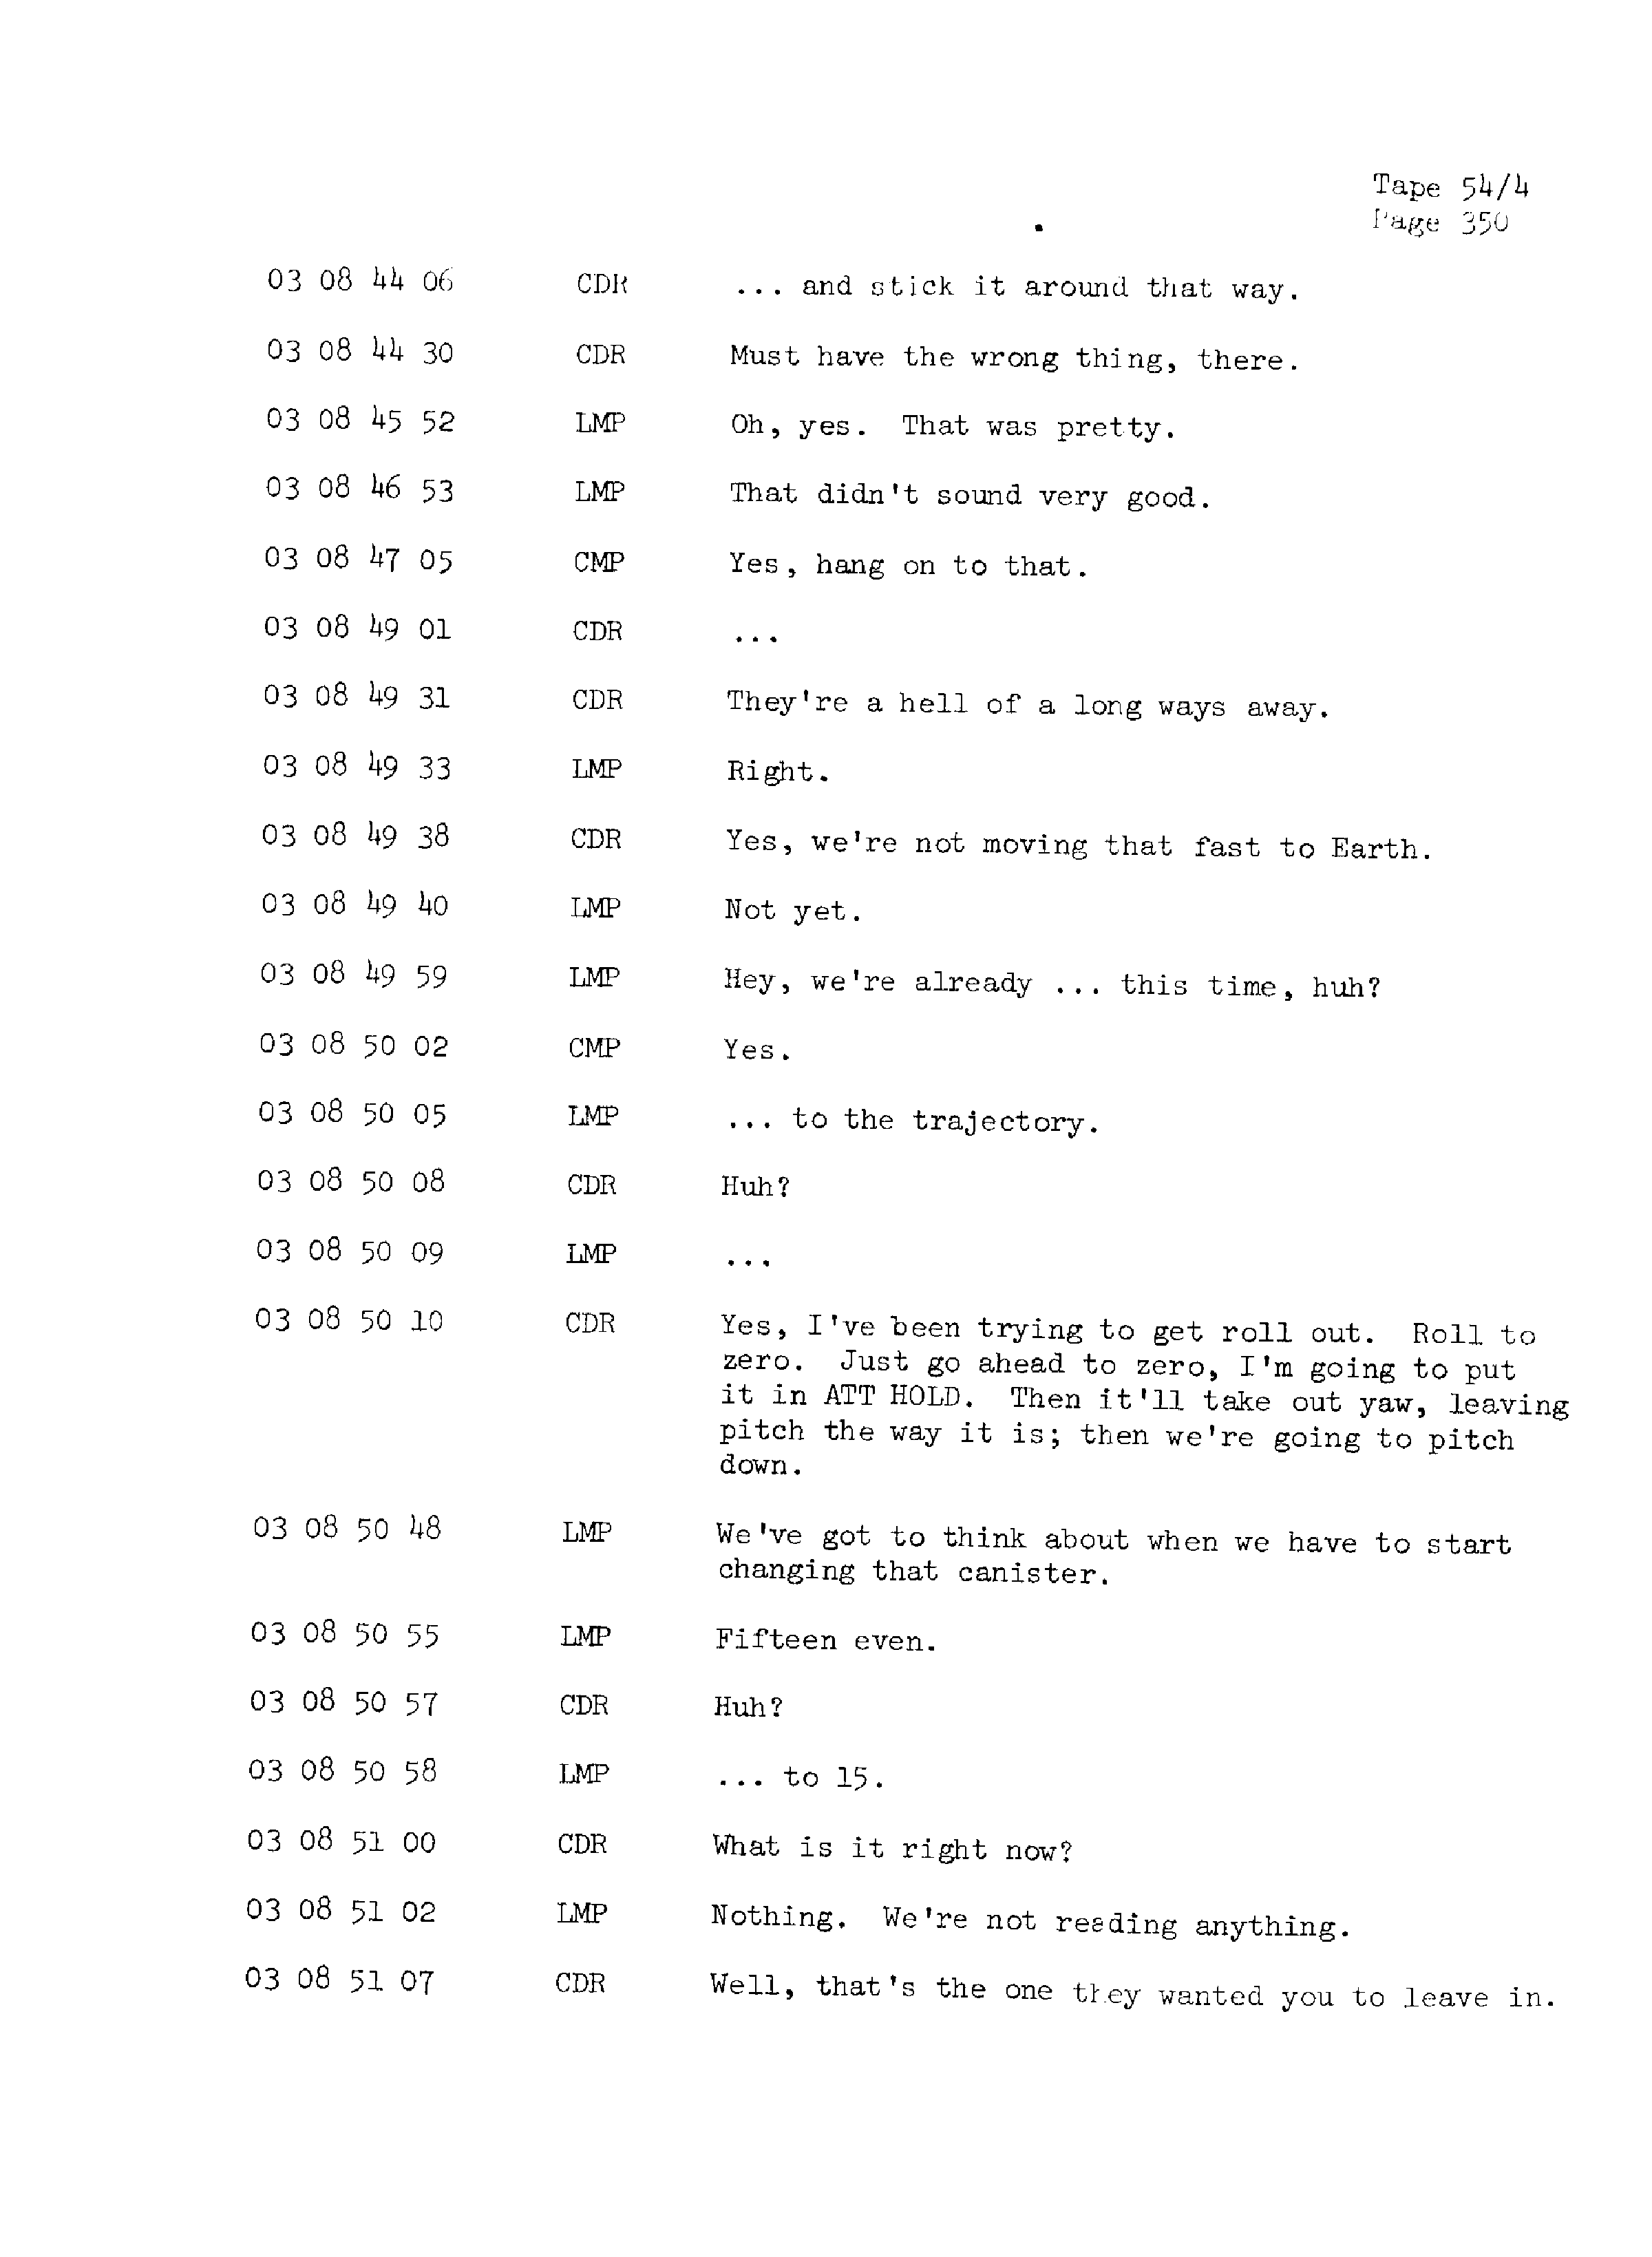 Page 357 of Apollo 13’s original transcript